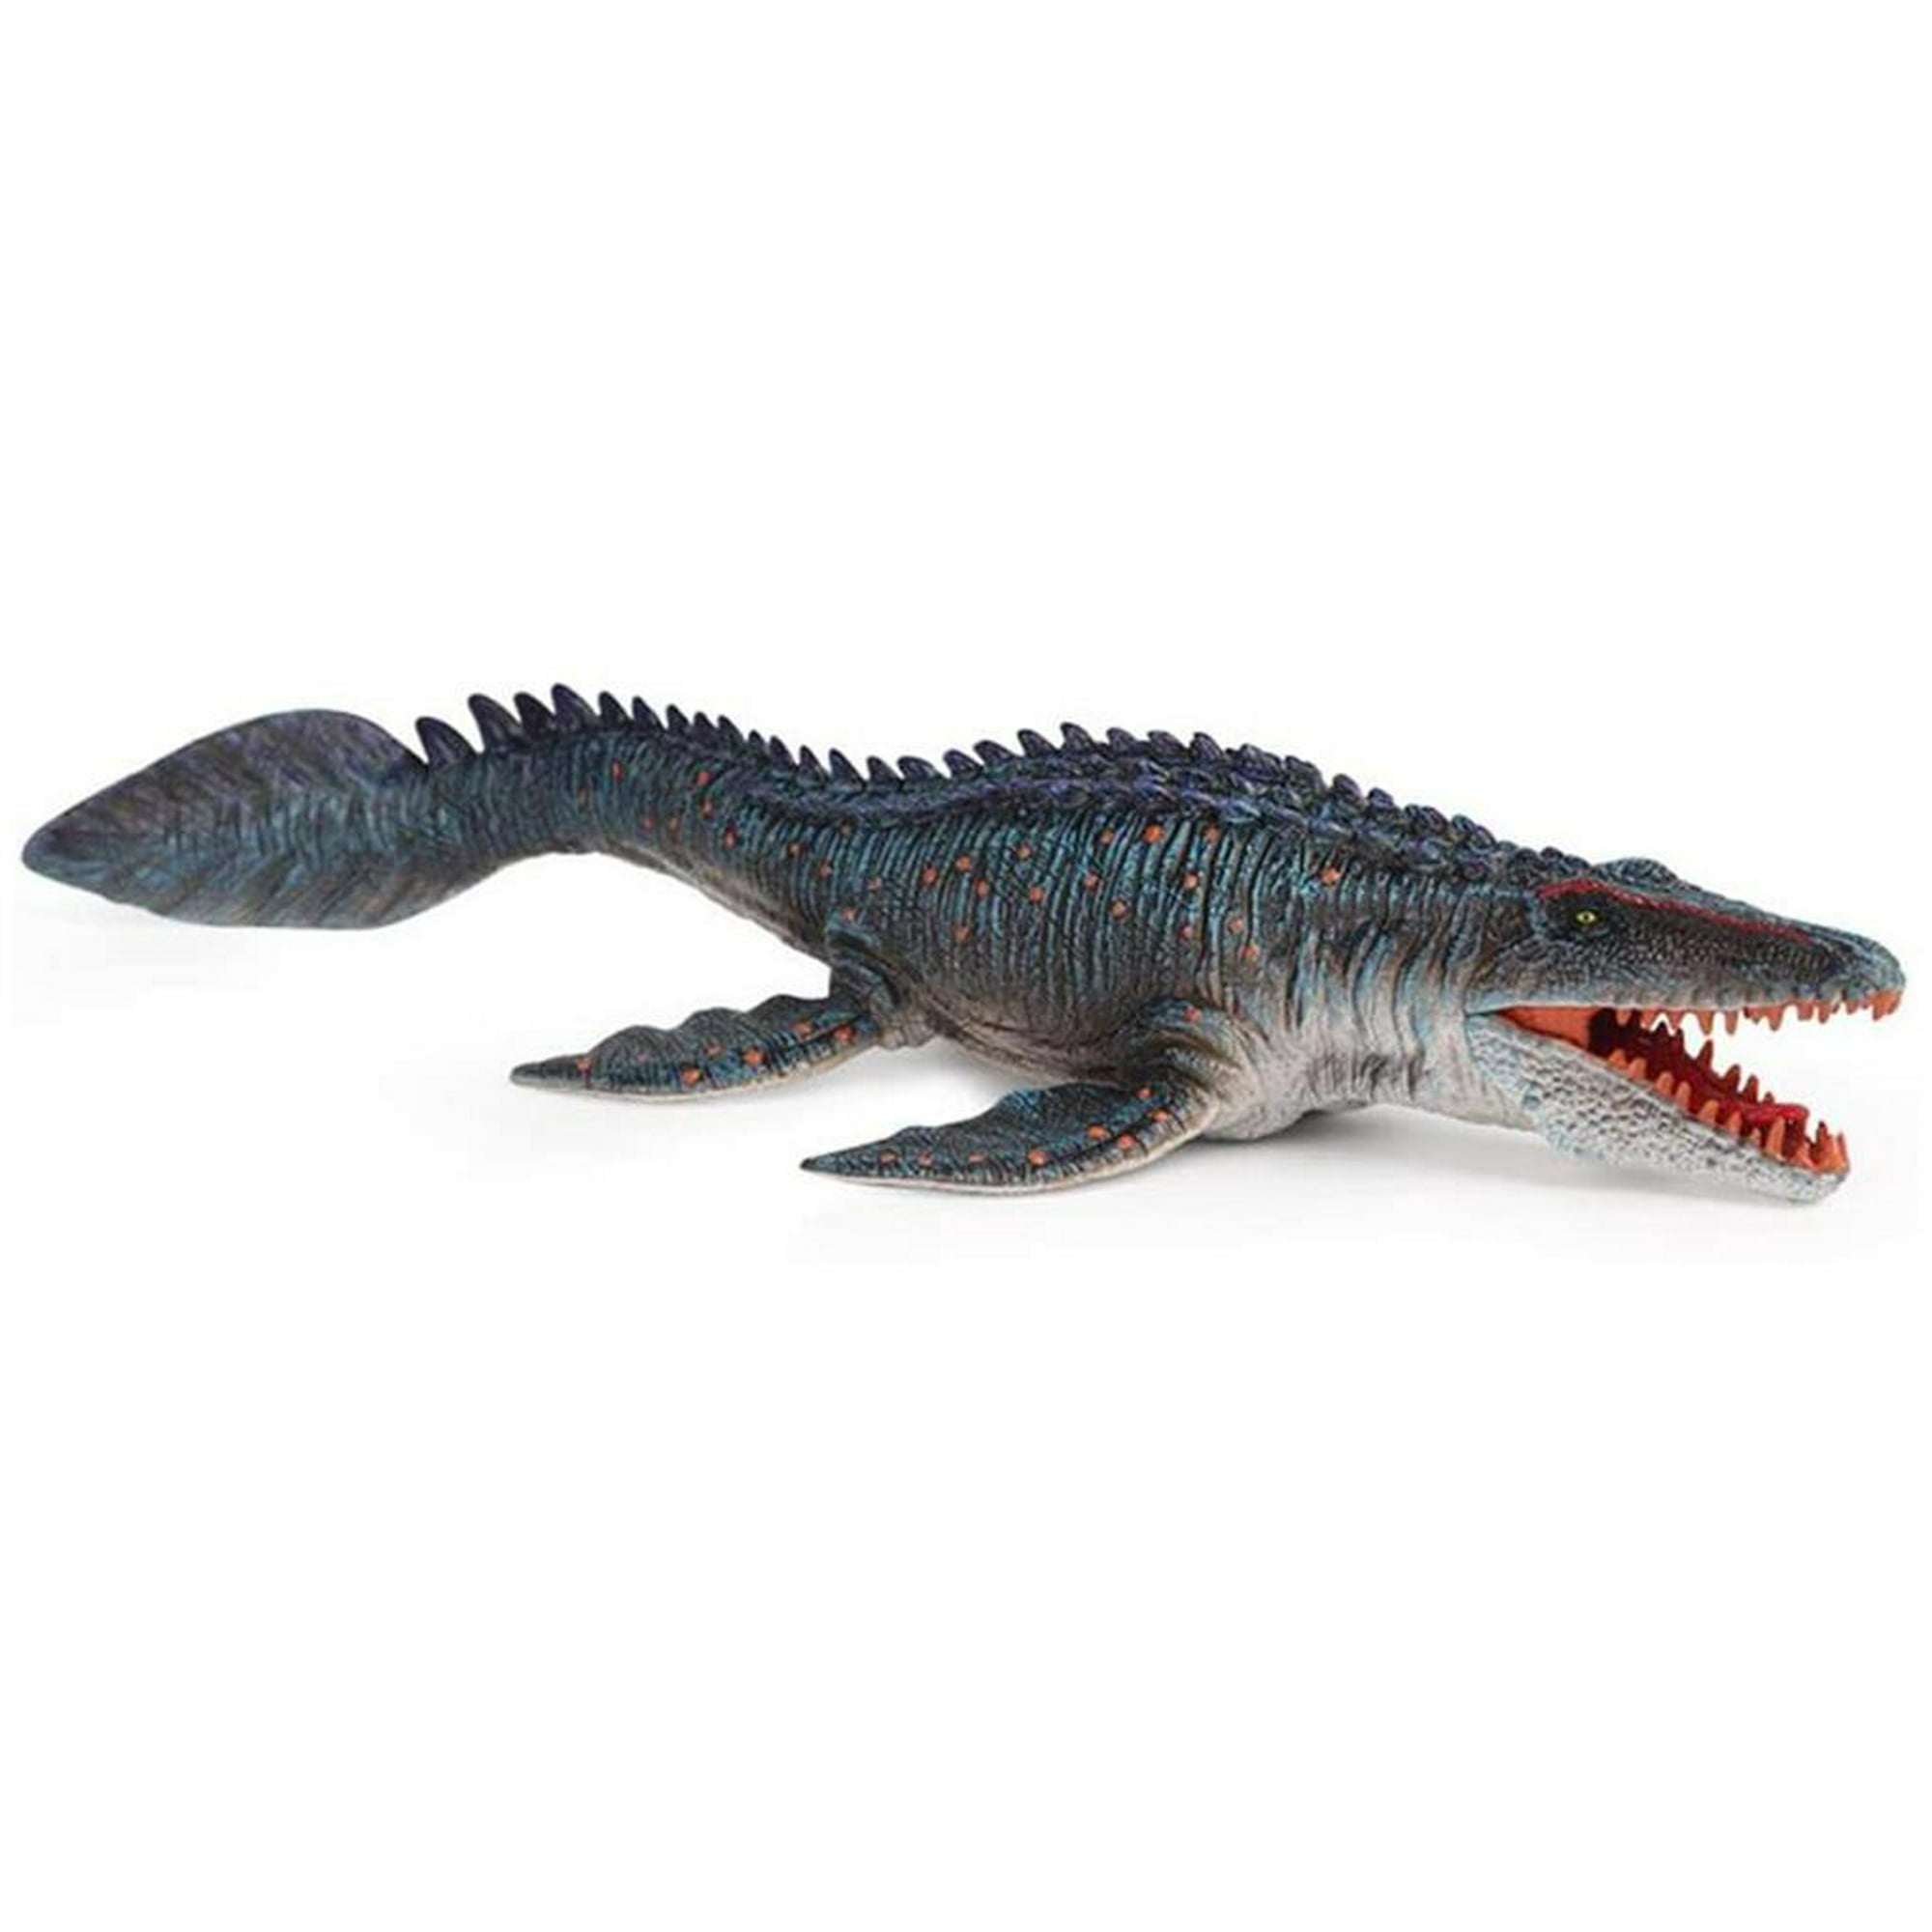  RISUNTOY 45 juguetes realistas de dinosaurios para